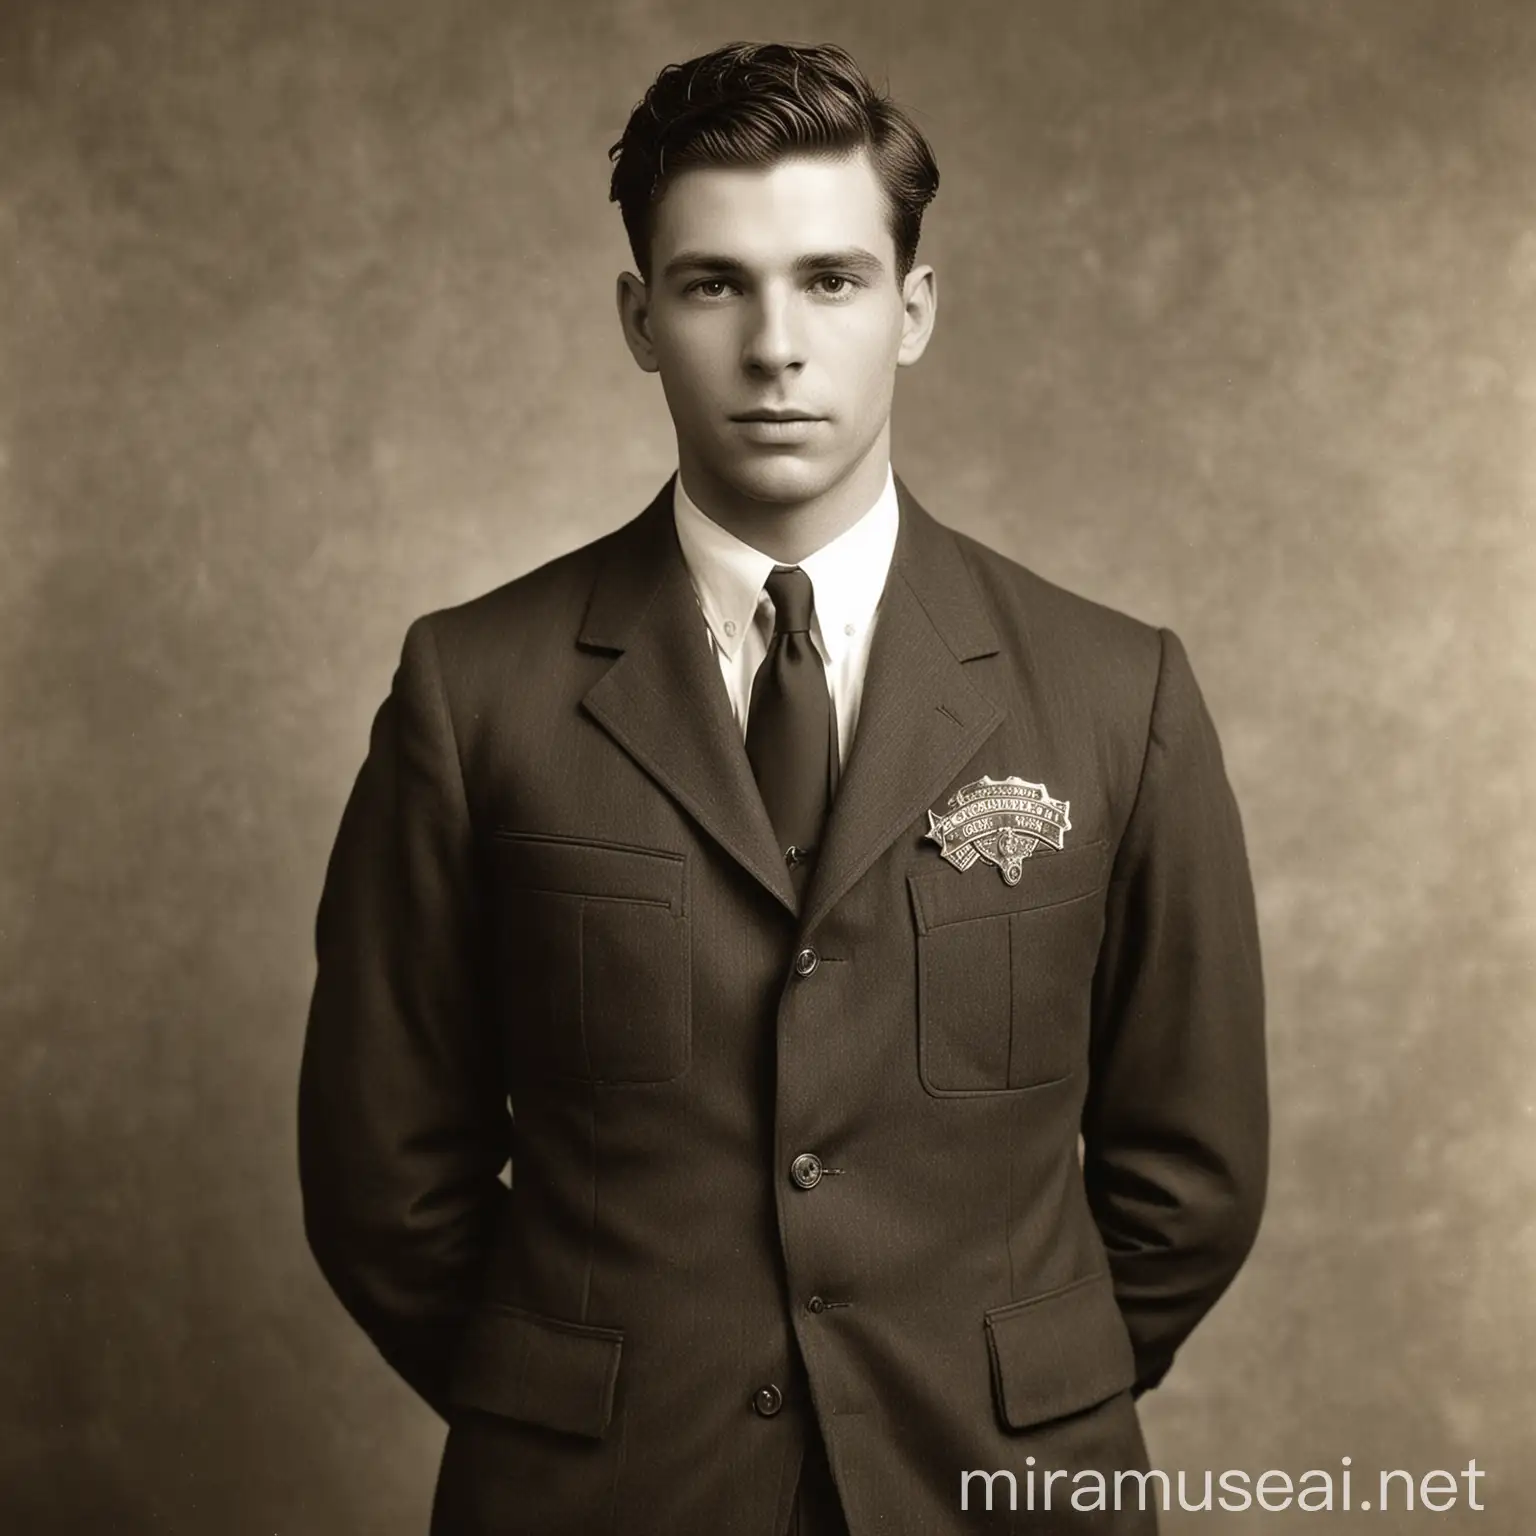 Vintage Portrait of Impeccable 1920s FBI Undercover Agent